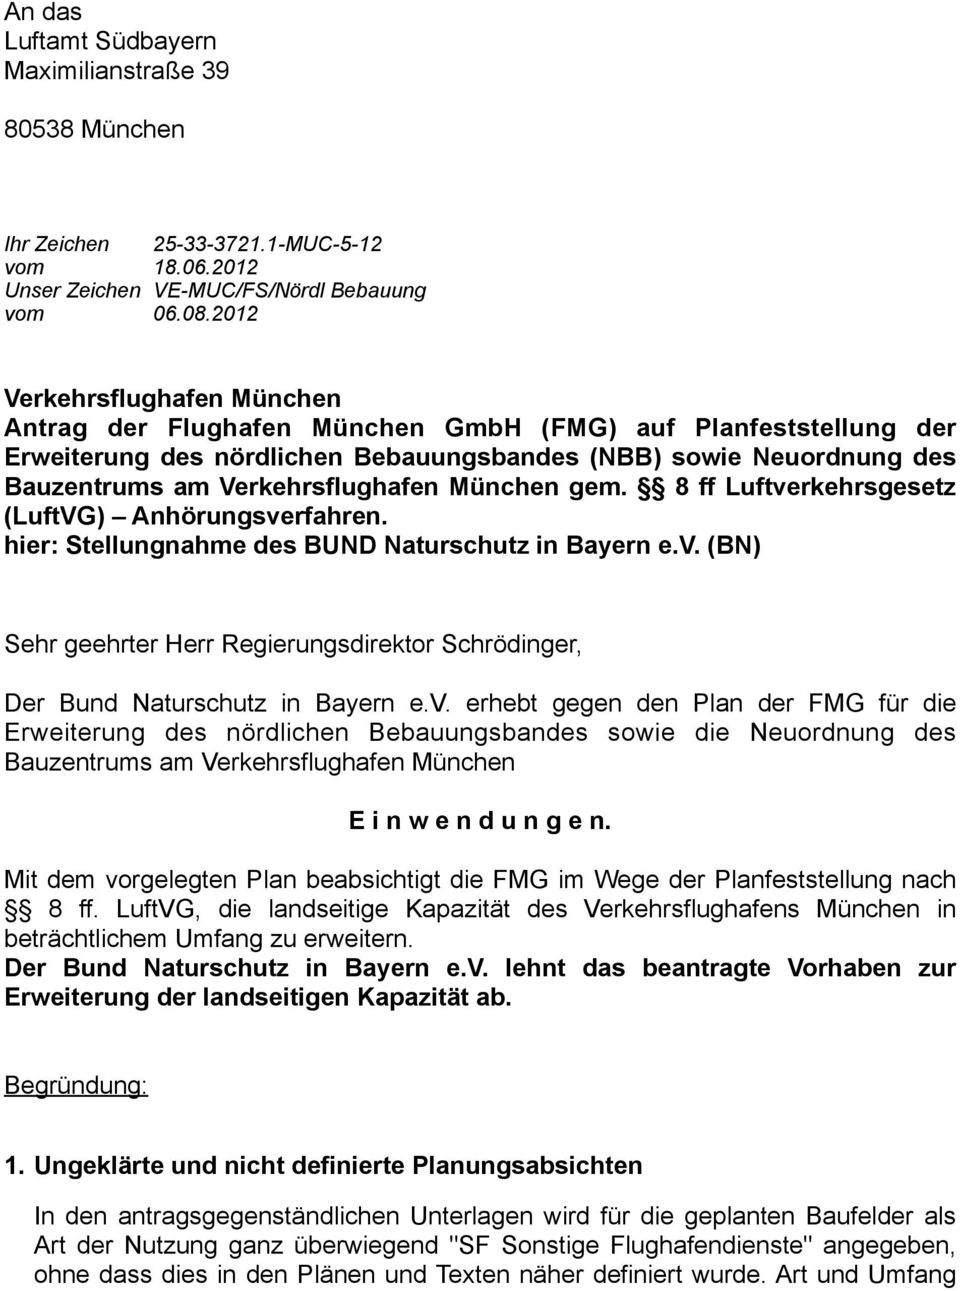 München gem. 8 ff Luftverkehrsgesetz (LuftVG) Anhörungsverfahren. hier: Stellungnahme des BUND Naturschutz in Bayern e.v. (BN) Sehr geehrter Herr Regierungsdirektor Schrödinger, Der Bund Naturschutz in Bayern e.